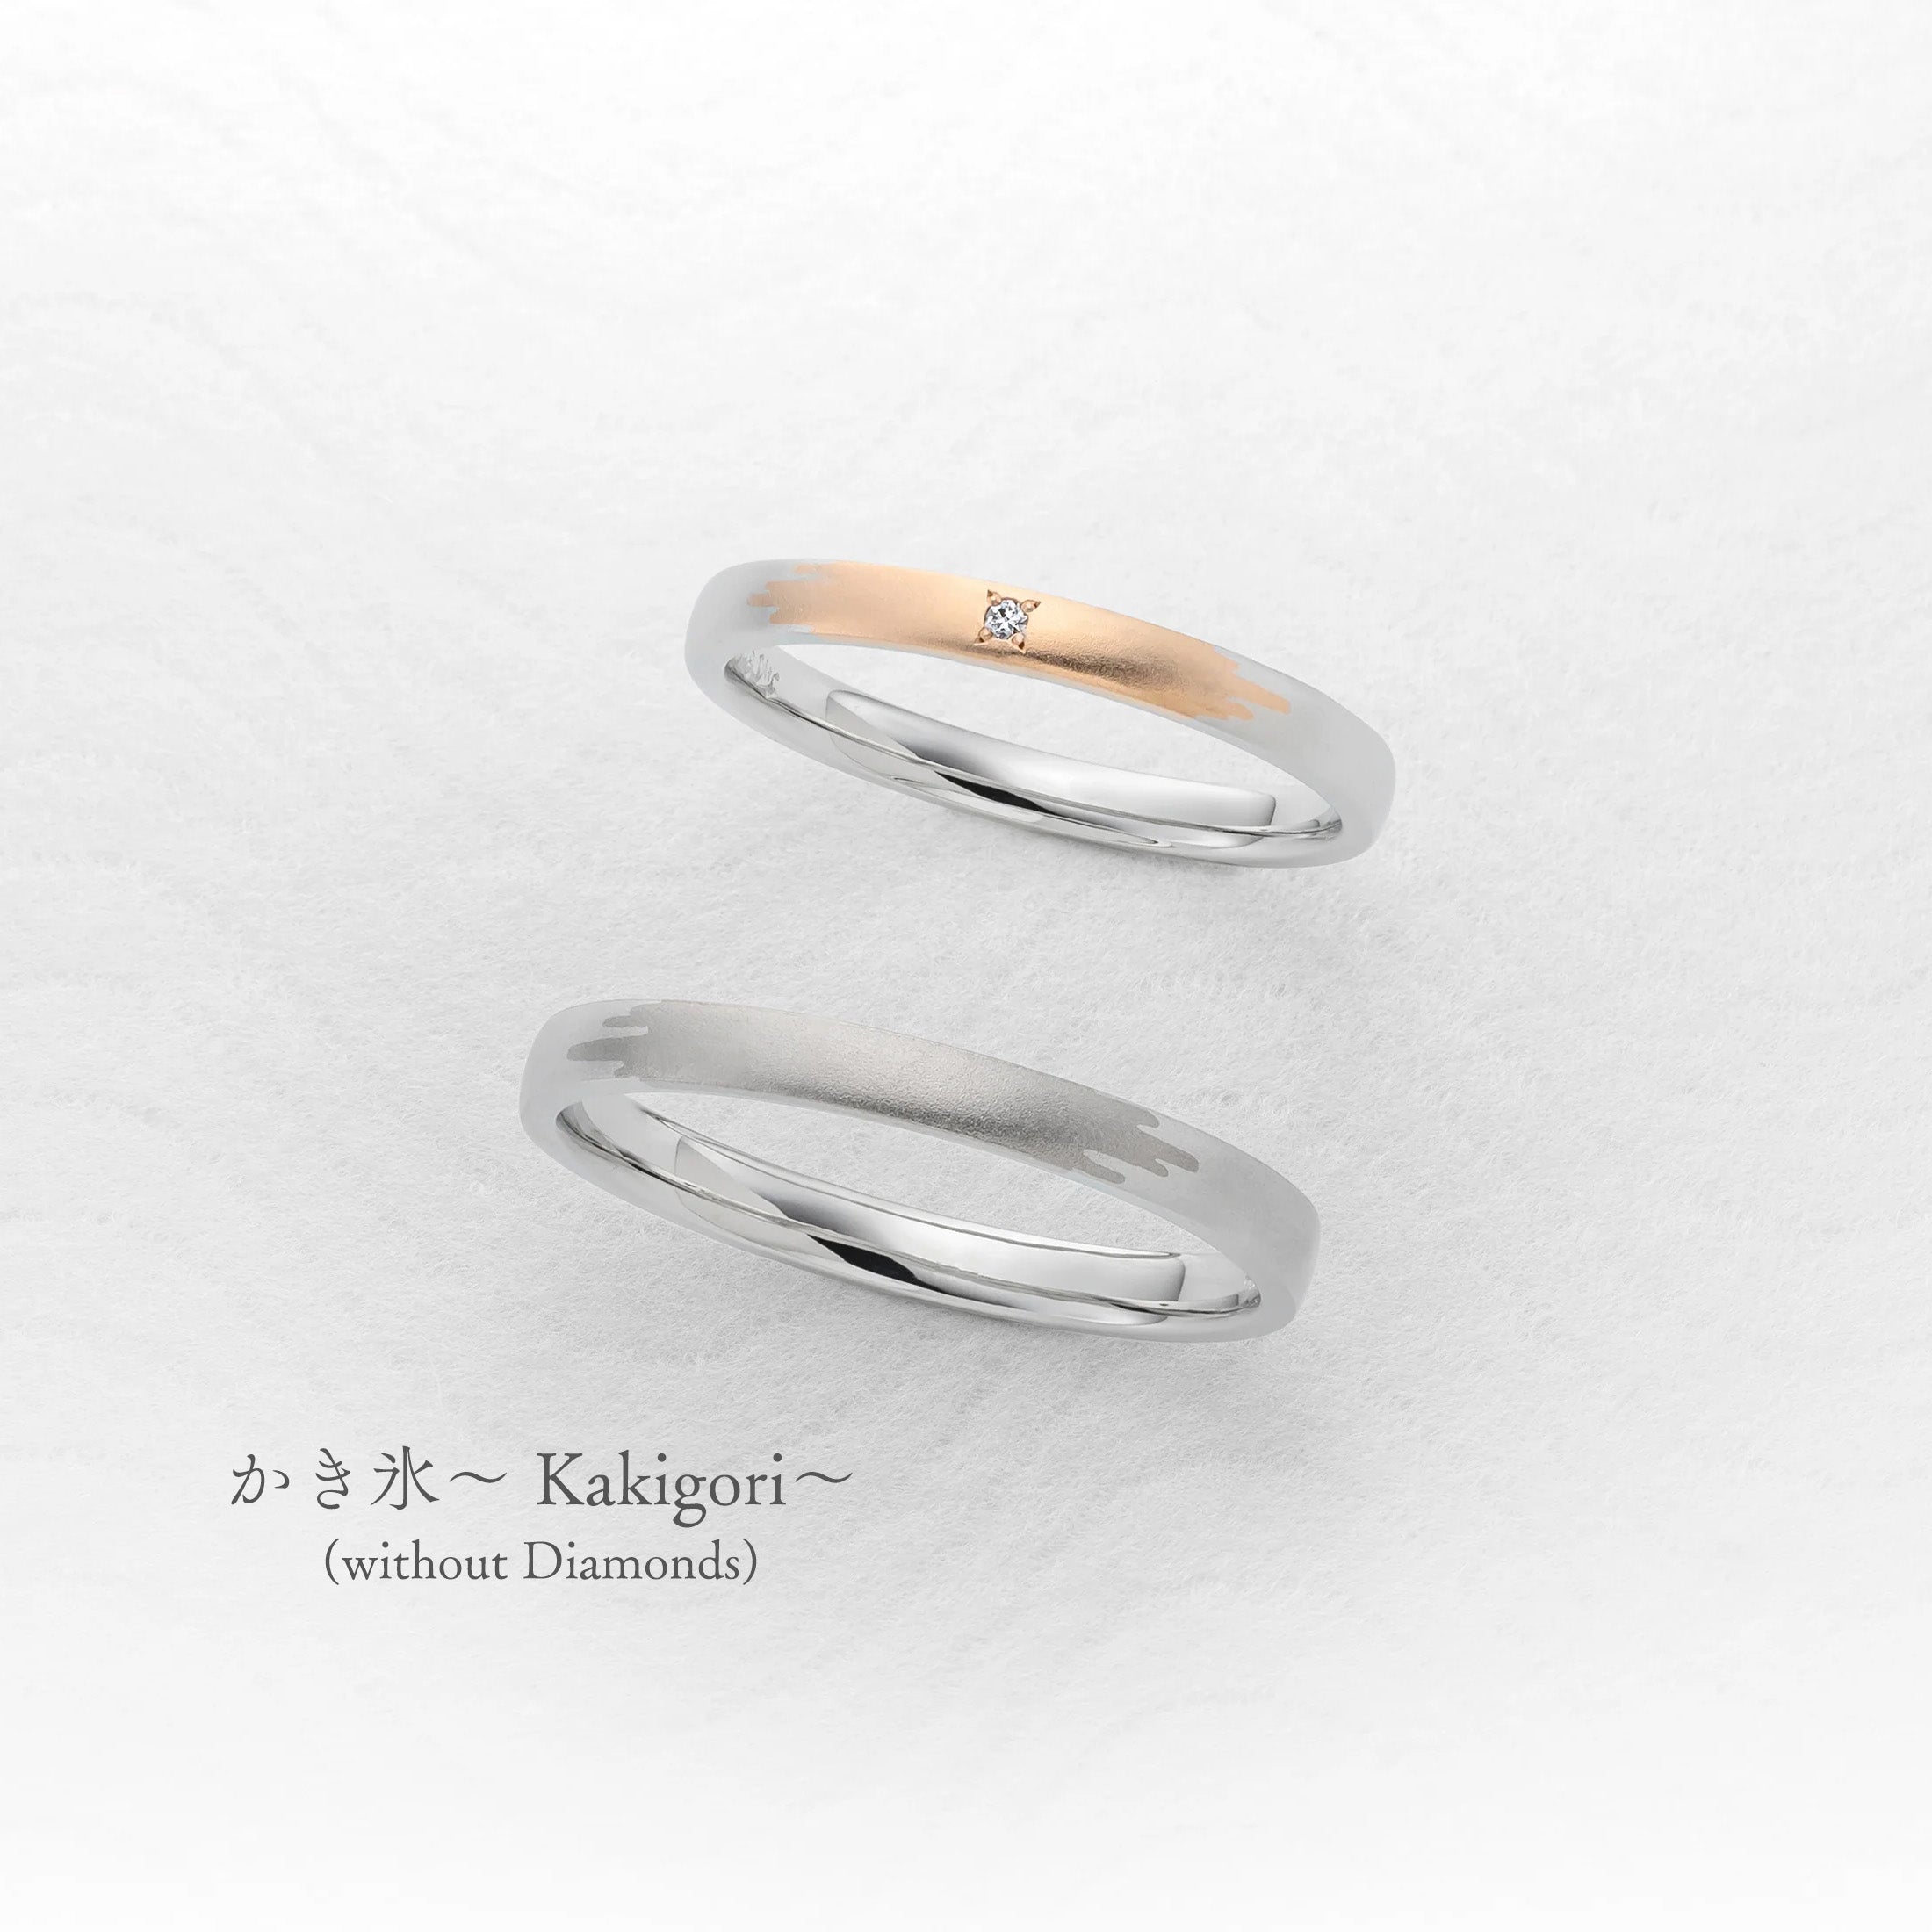 かき氷〜Kakigori〜(without Diamonds)